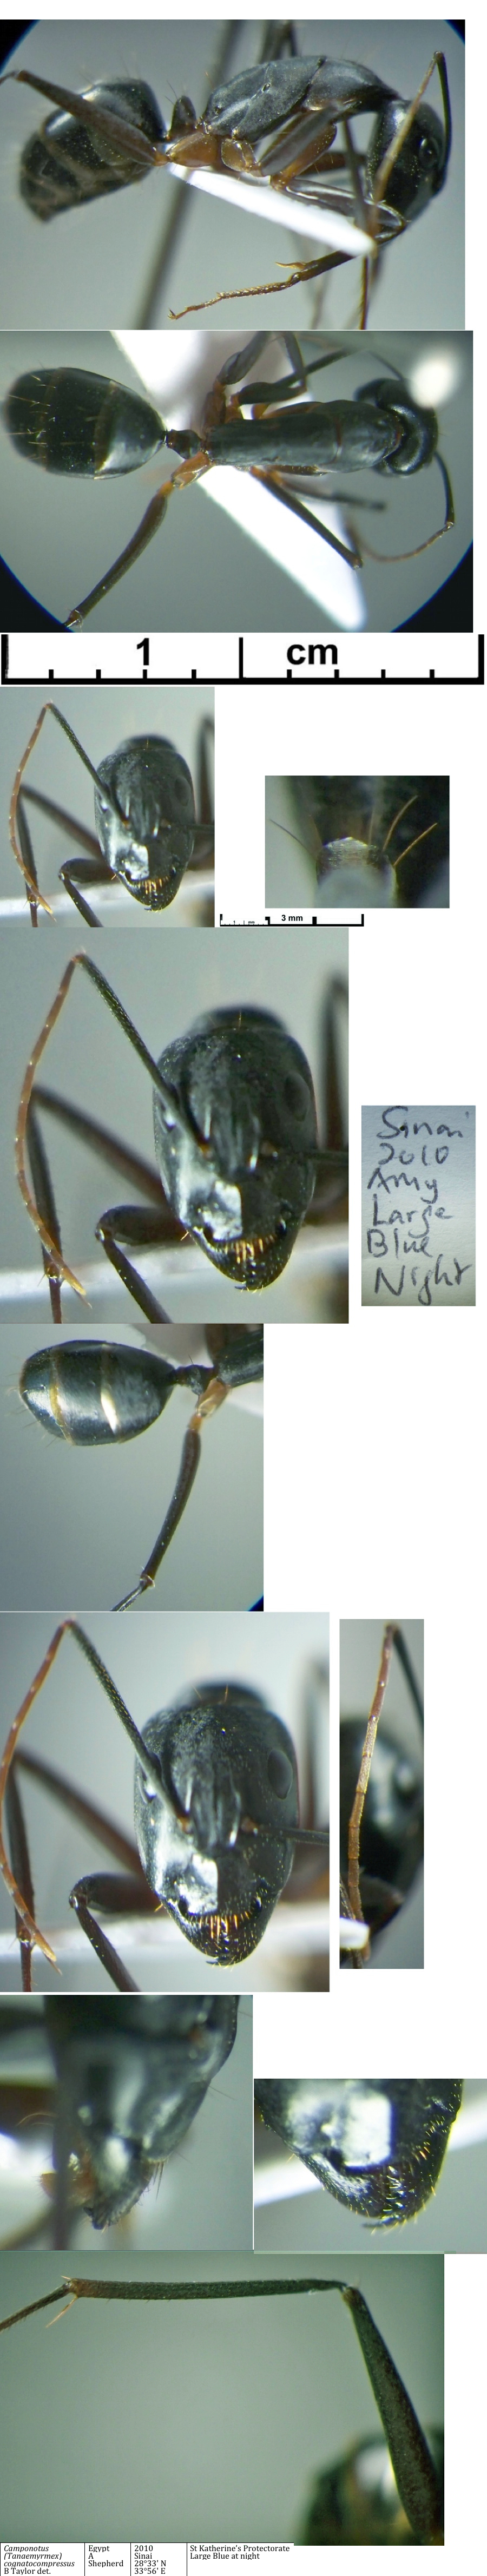 {Camponotus cognatocompressus media}